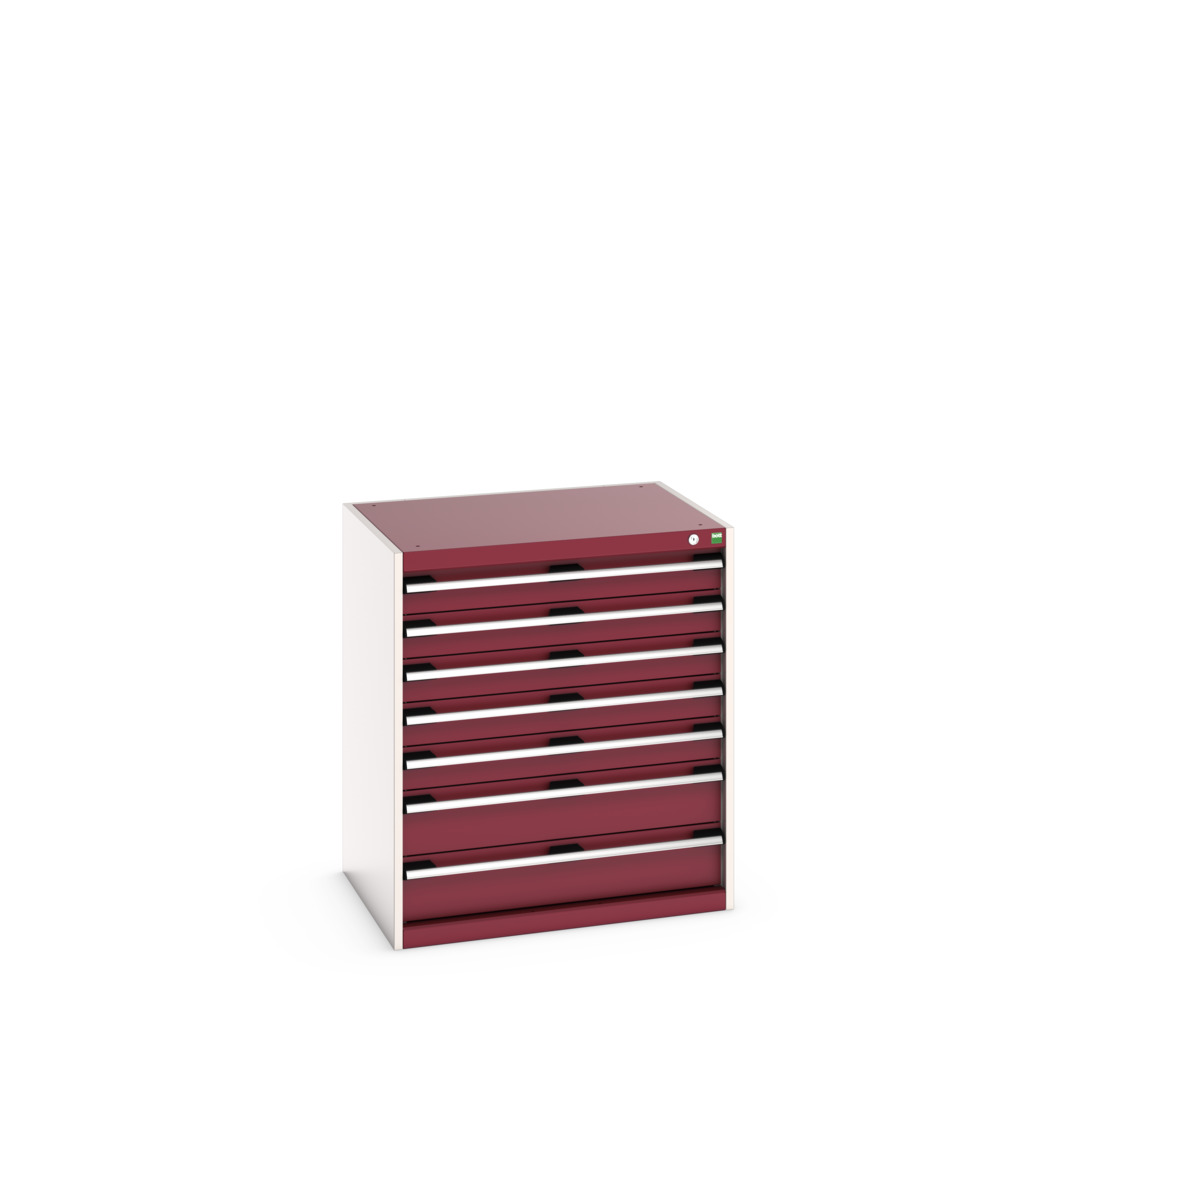 40020041.24V - cubio drawer cabinet